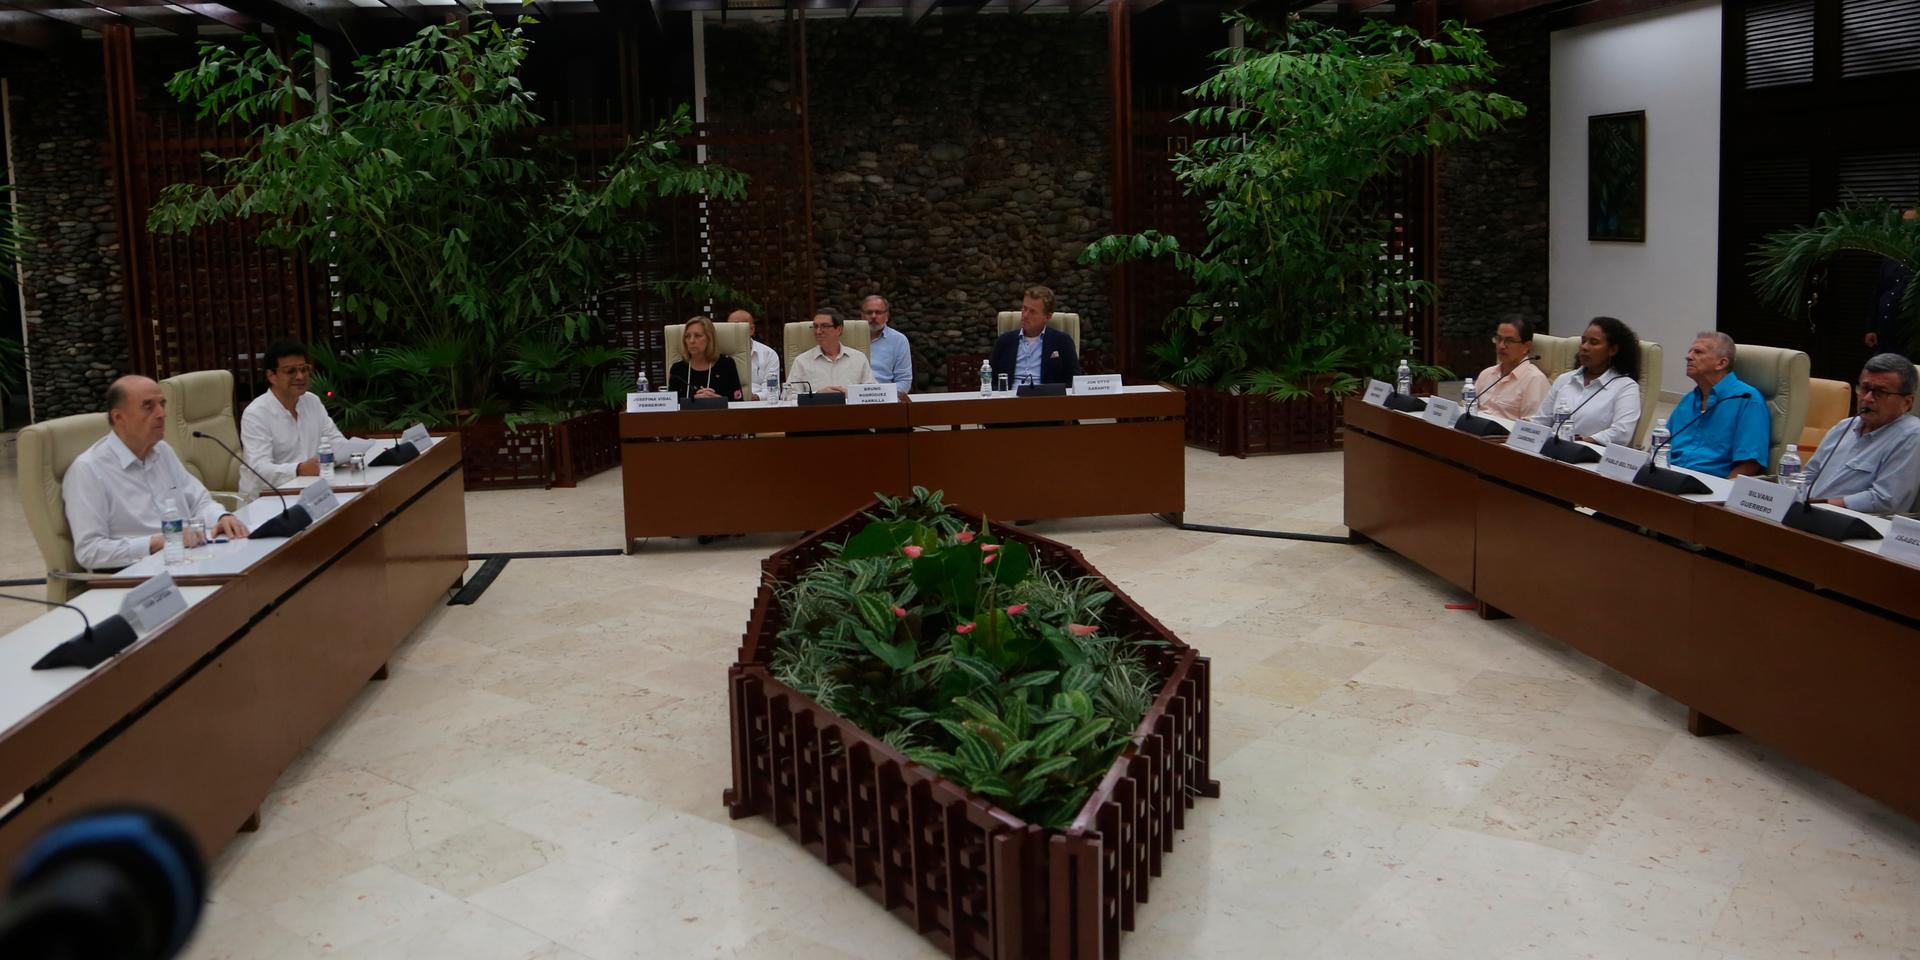 En insyn i det möte i Havanna, Kuba, som parterna hoppas utgör det första steget mot fred mellan colombianska staten och ELN.